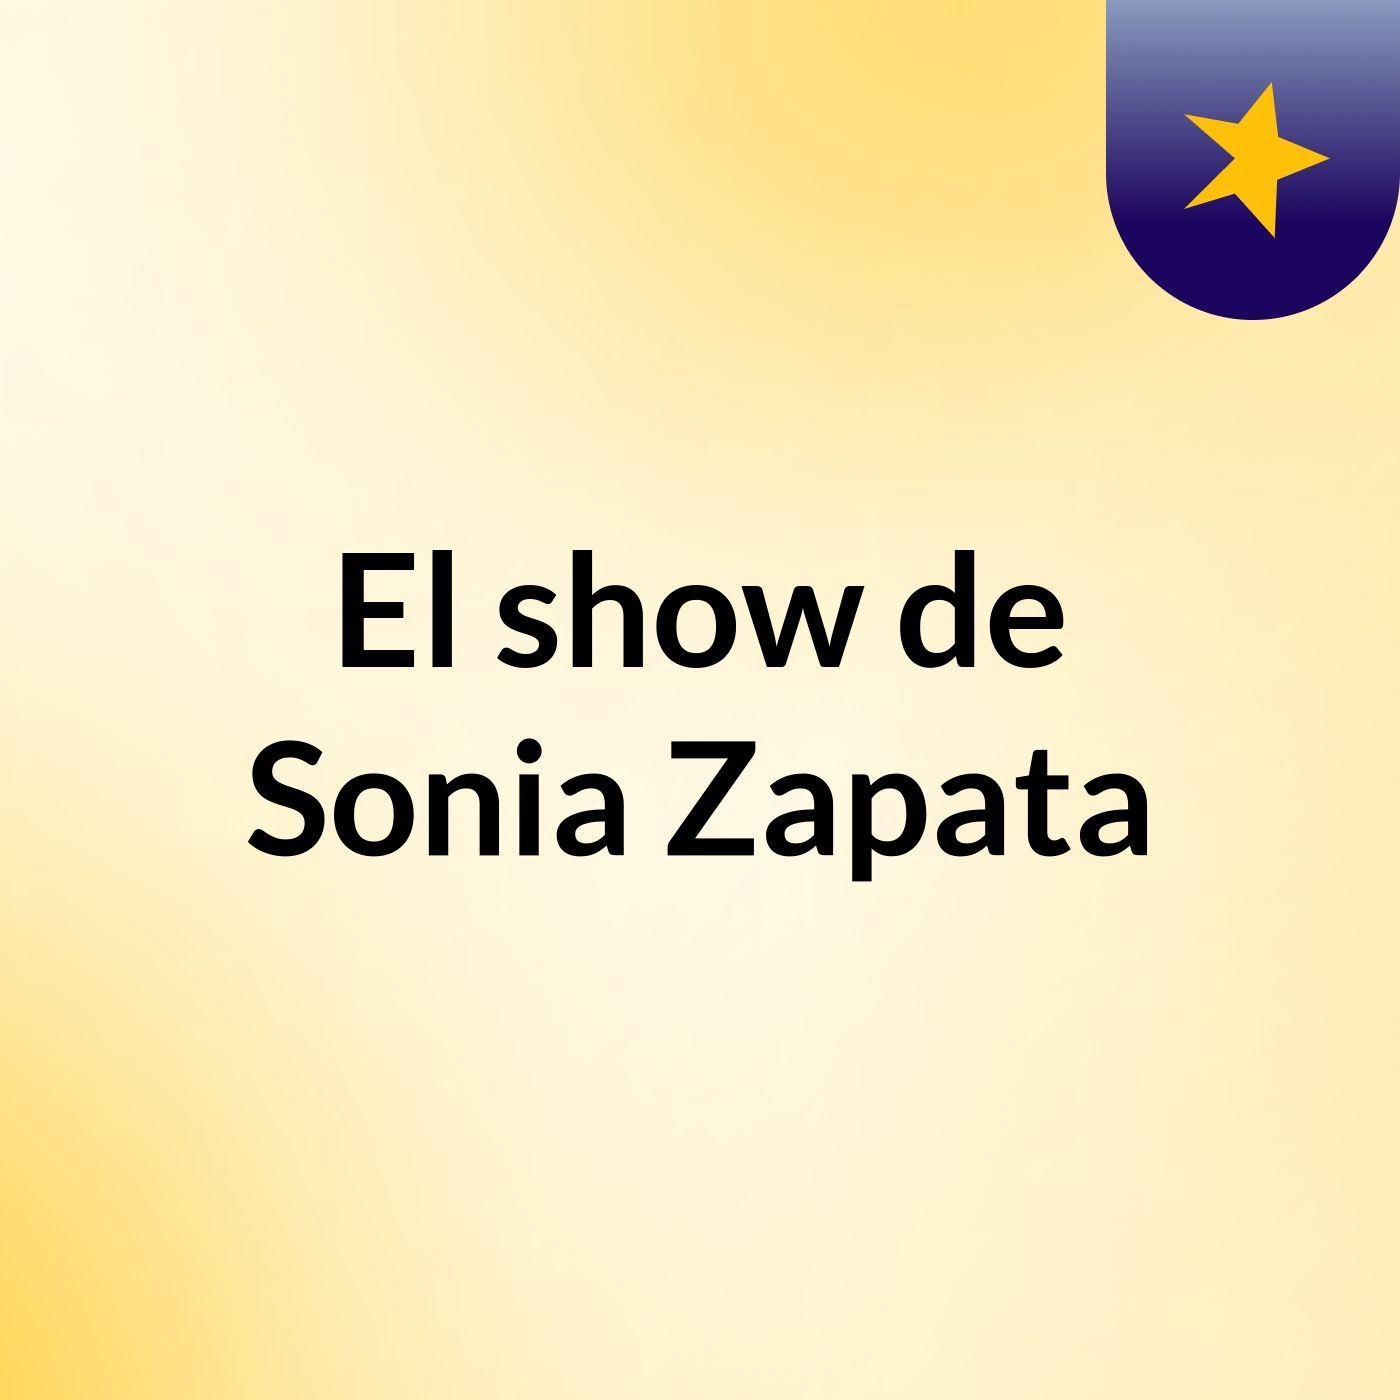 El show de Sonia Zapata